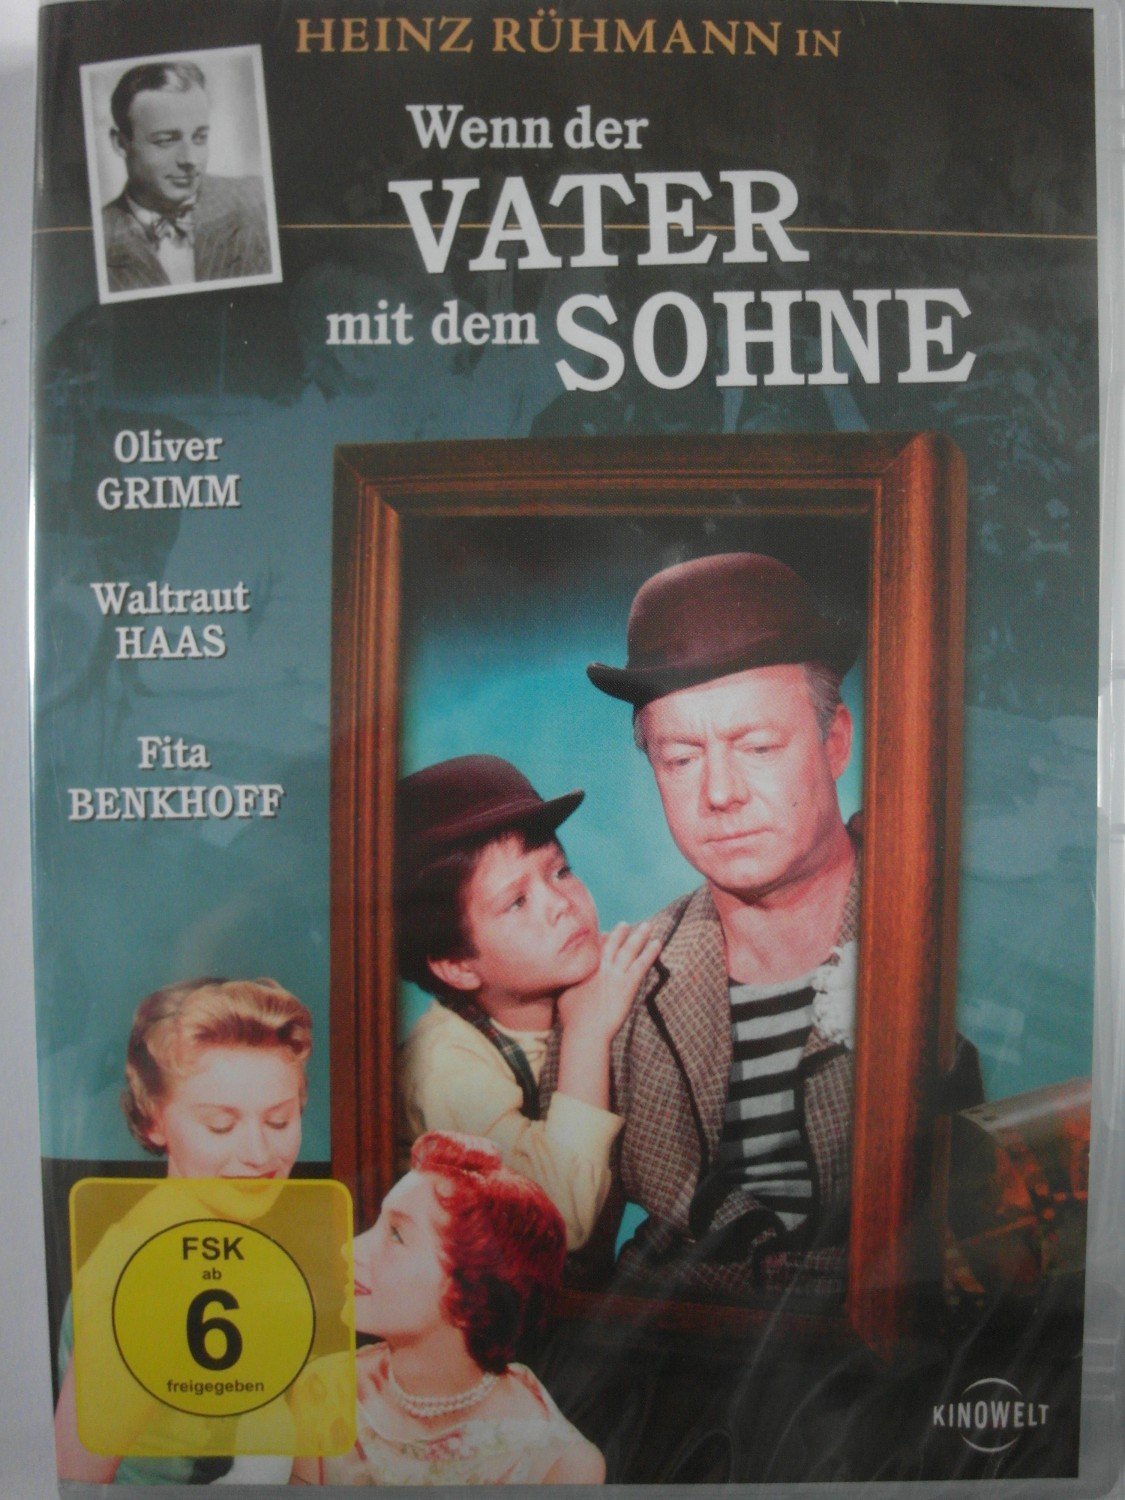 https://images.booklooker.de/x/012XxB/Hans-Quest+Wenn-der-Vater-mit-dem-Sohne-Heinz-R%C3%BChmann-La-Le-Lu-Schlaflied-Clown-Adoptivkind.jpg